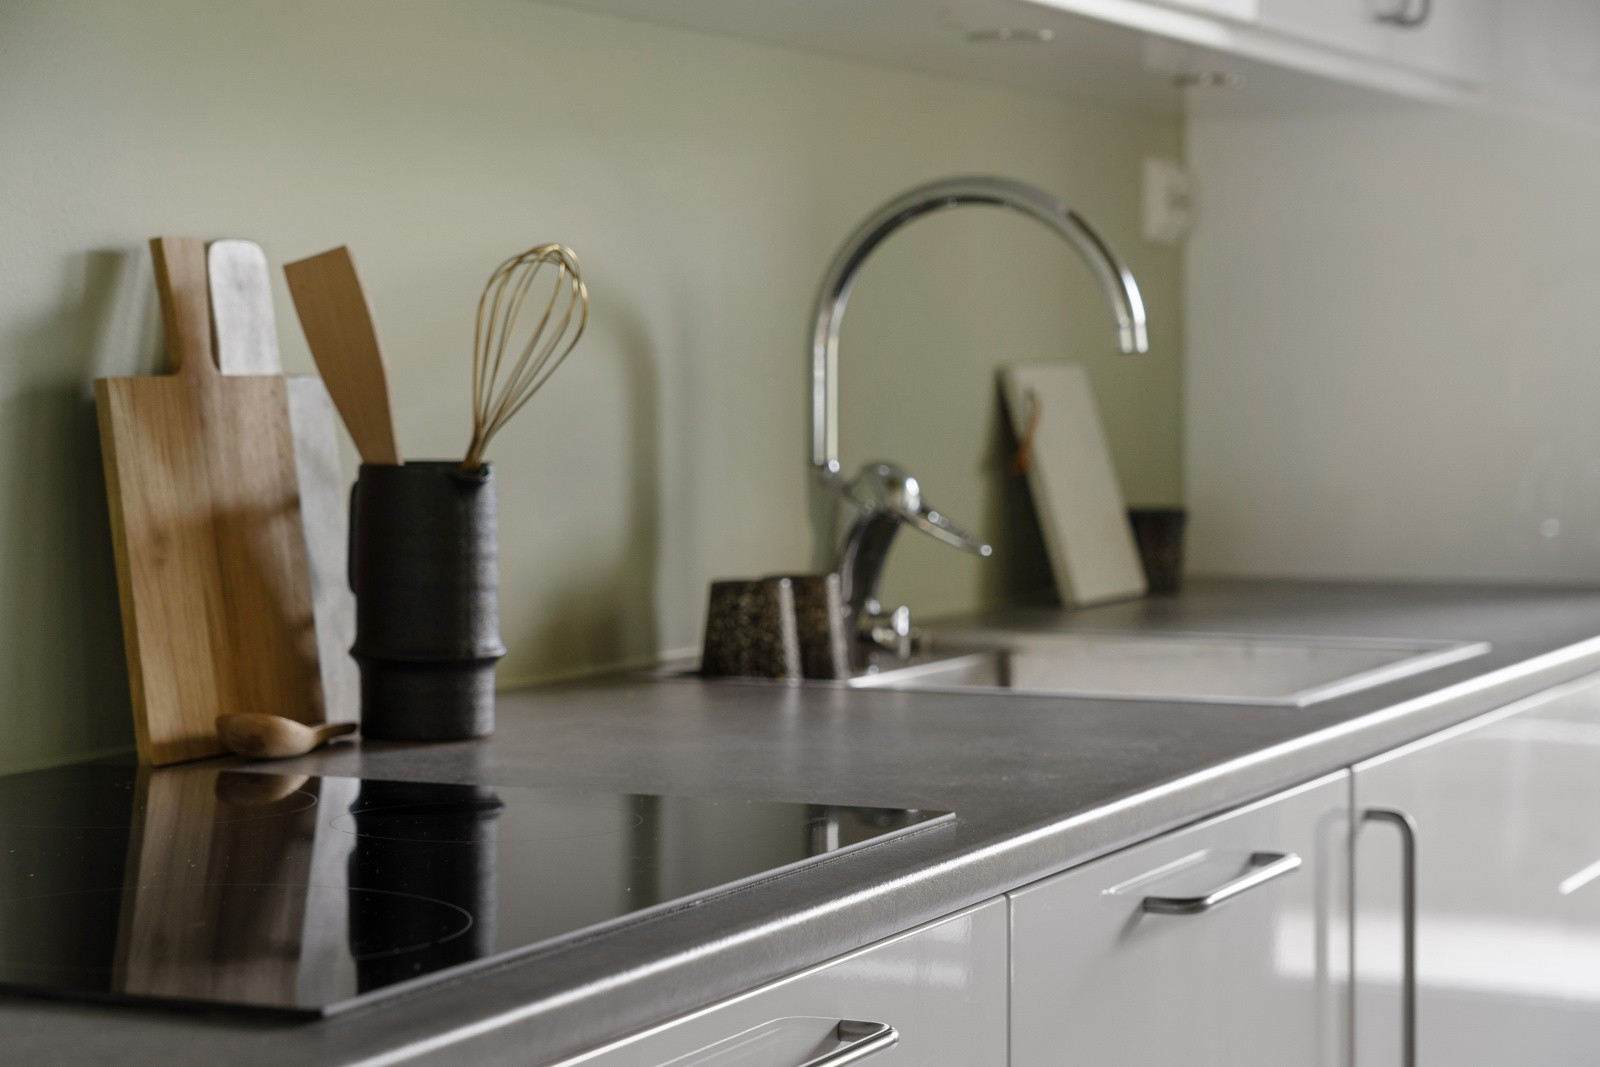 Mye skap- og benkeplass sikrer rikelig med oppbevaringsplass samt arbeidsplass på kjøkkenbenk.